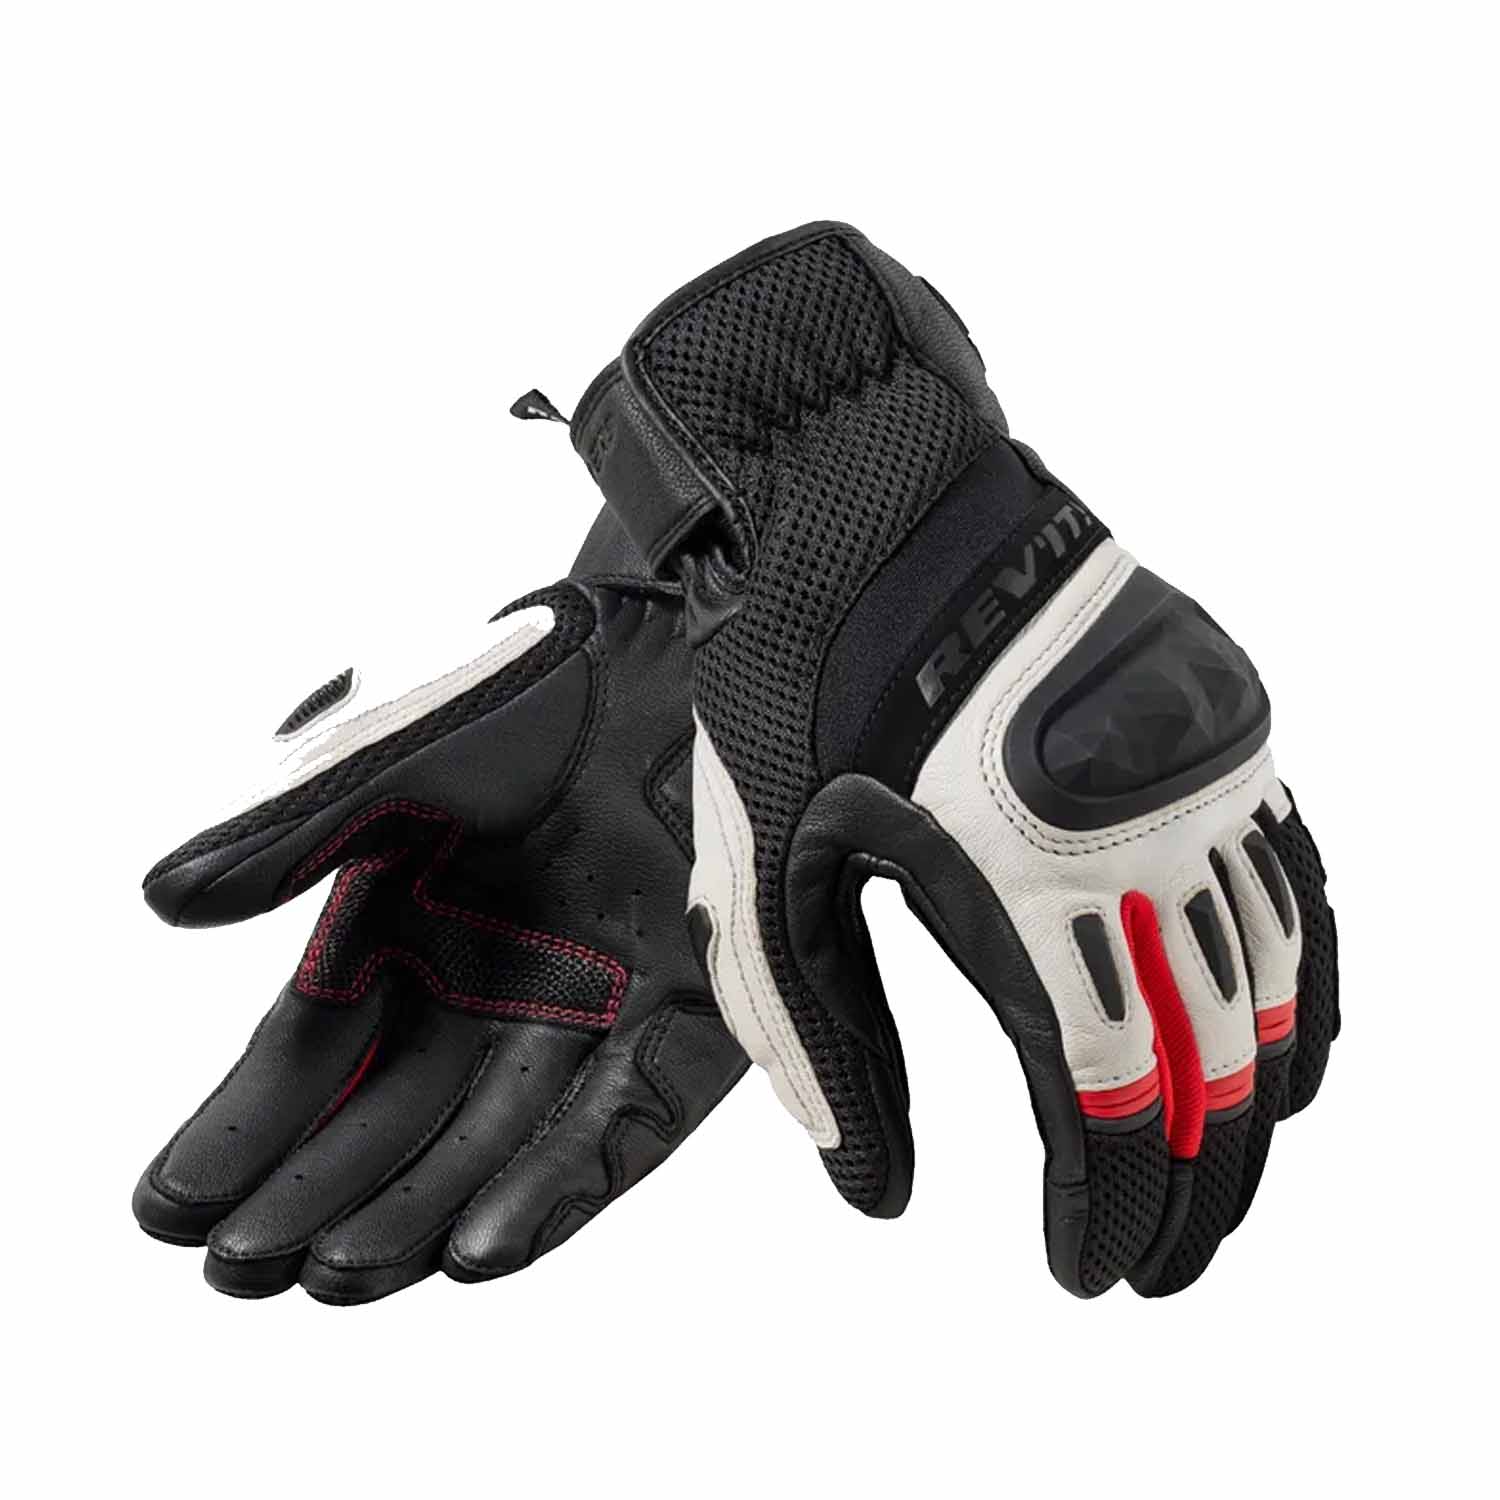 Image of REV'IT! Dirt 4 Gloves Black Red Size M EN